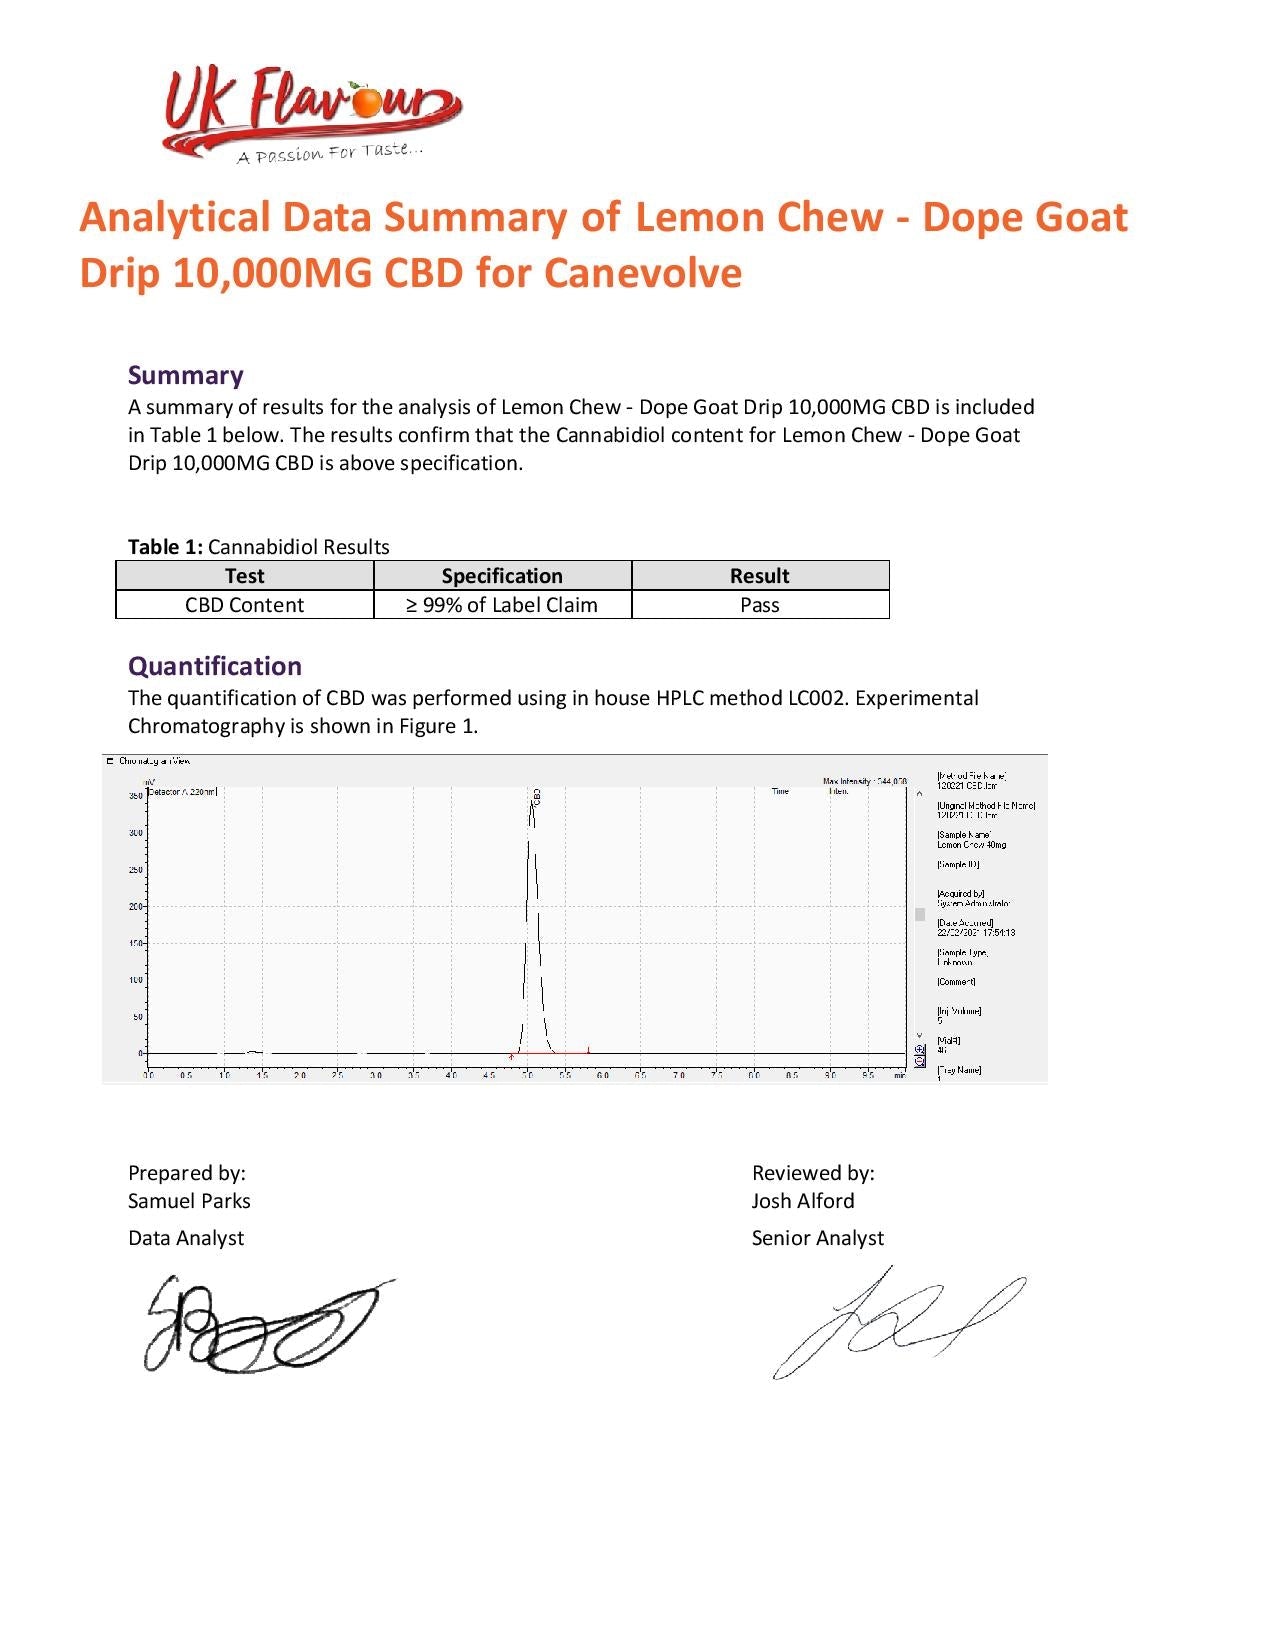 Dope Goat Drip 10,000mg CBD Líquido para vapeo 250ml (70PG/30VG)